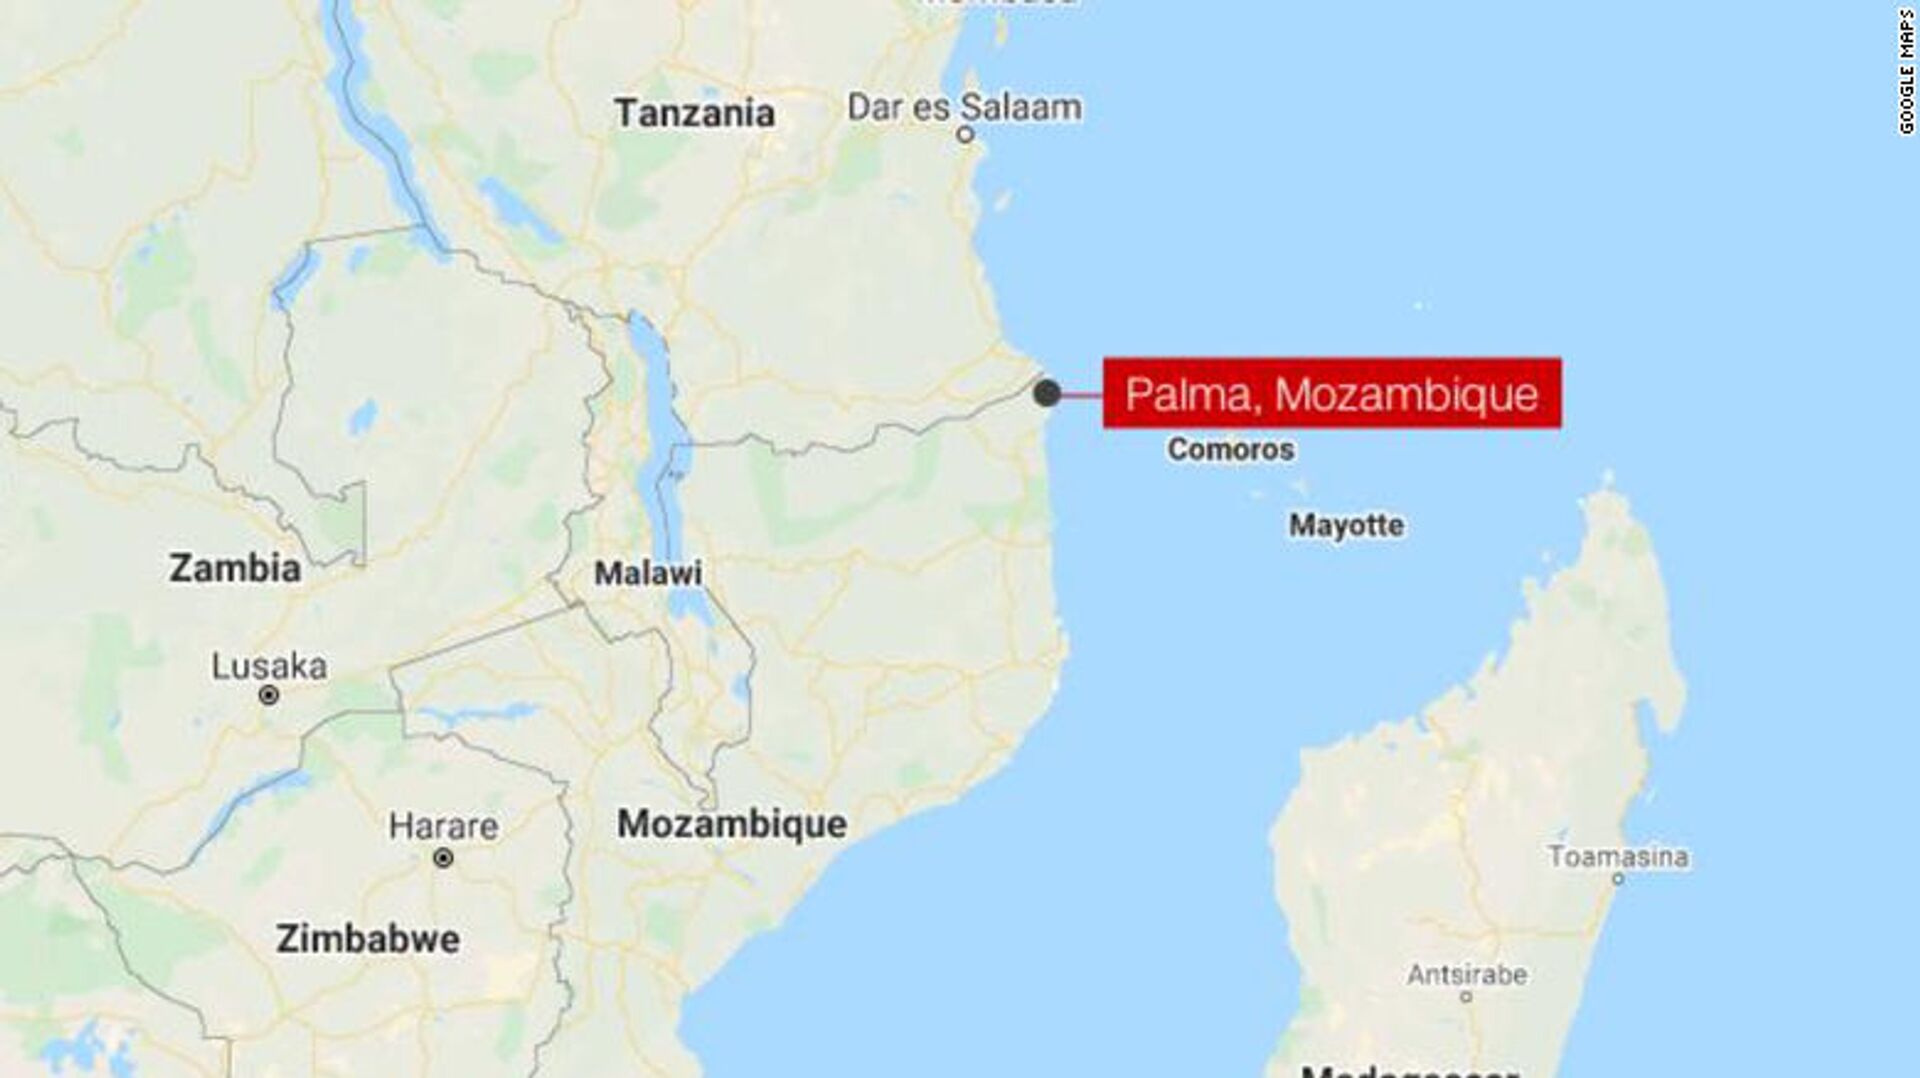 IŞİD, Mozambik'in Palma kasabasını ele geçirdiğini duyurdu:Yüzlerce kişi hayatını kaybetti, 10 bin kişi tahliye bekliyor - Sputnik Türkiye, 1920, 30.03.2021